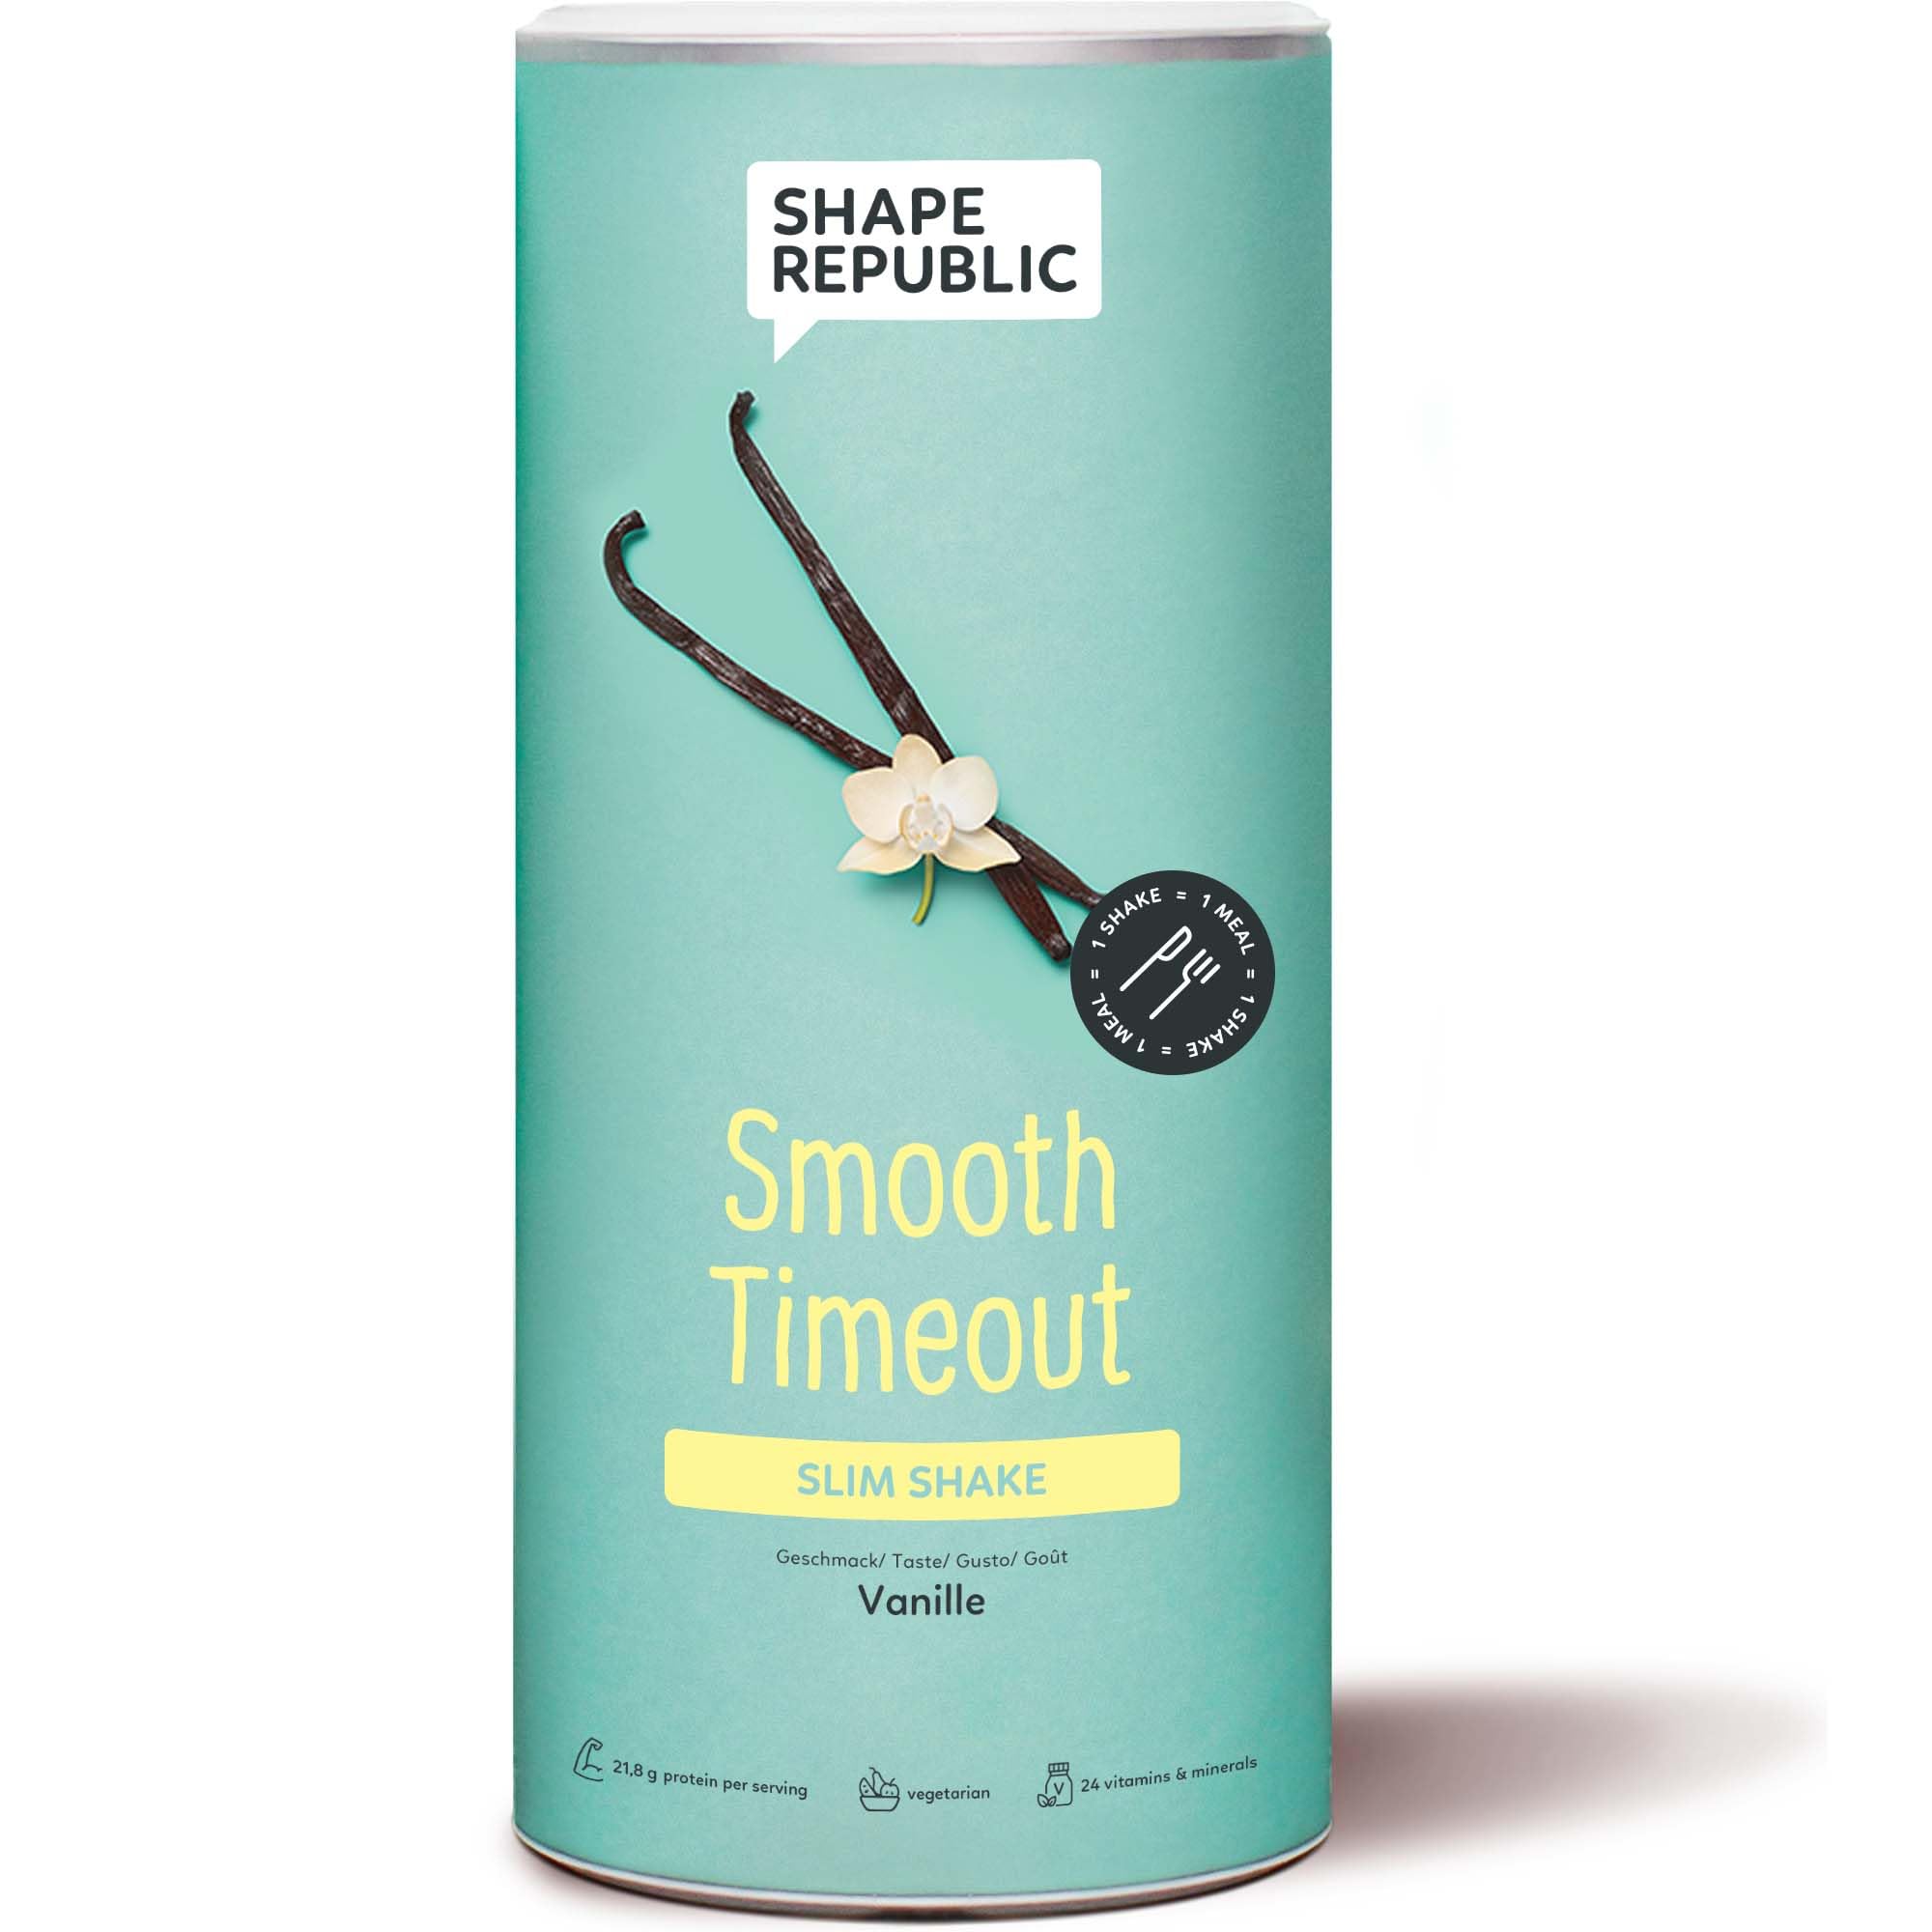 SHAPE REPUBLIC Vanille - Abnehm Shake - Proteinreich - Enthält 24 Vitamine & Mineralstoffe - Diät Shakes zum Abnehmen